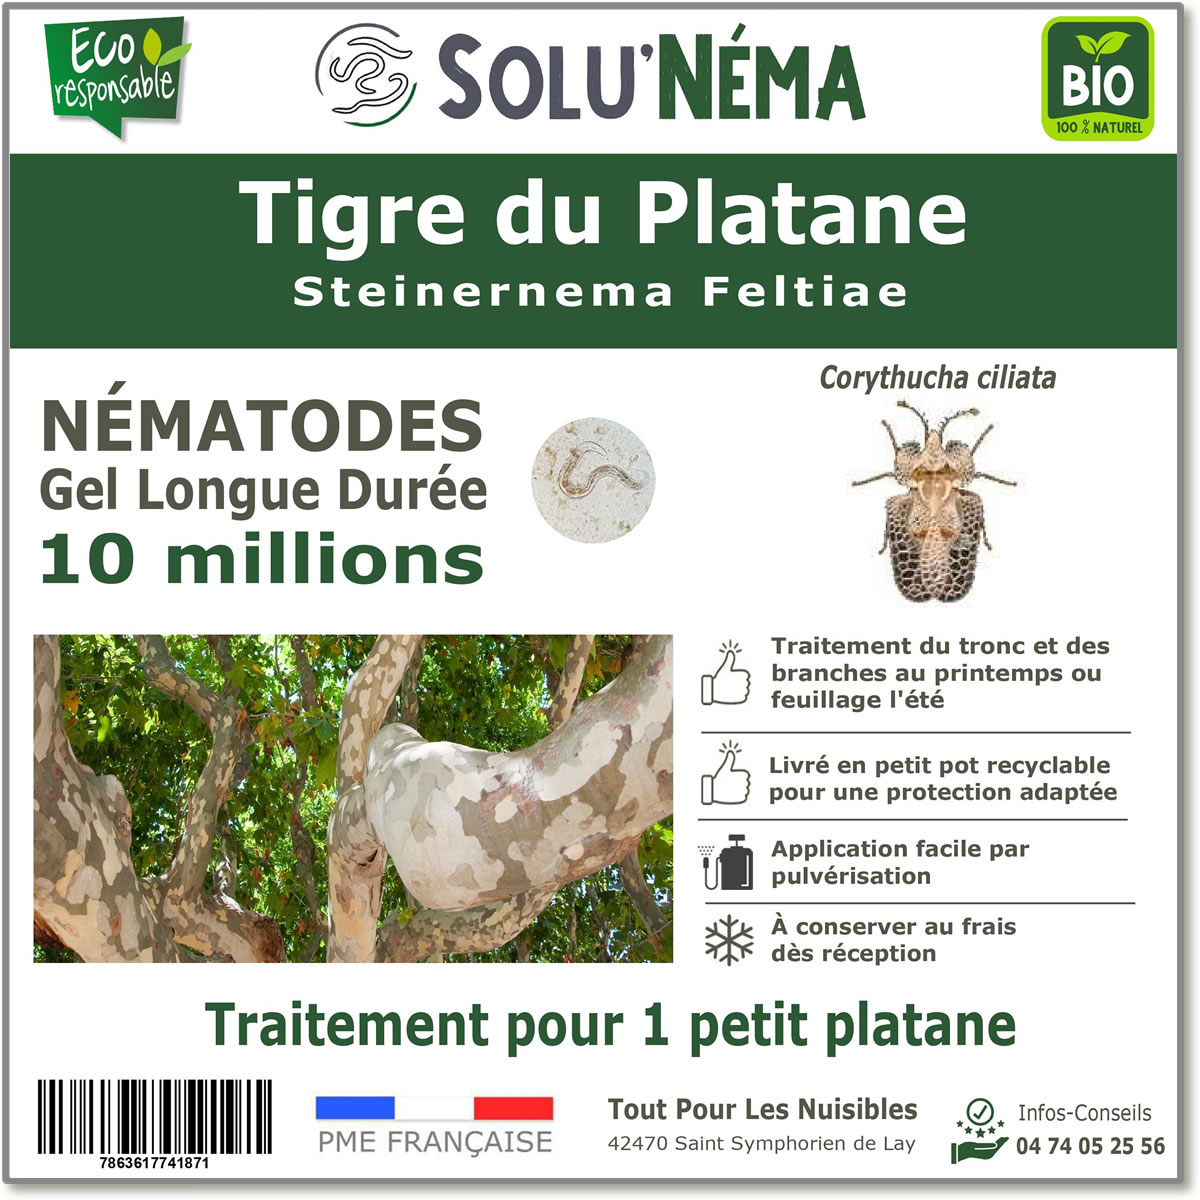 10 millions de nematodes pour le tigre du platane